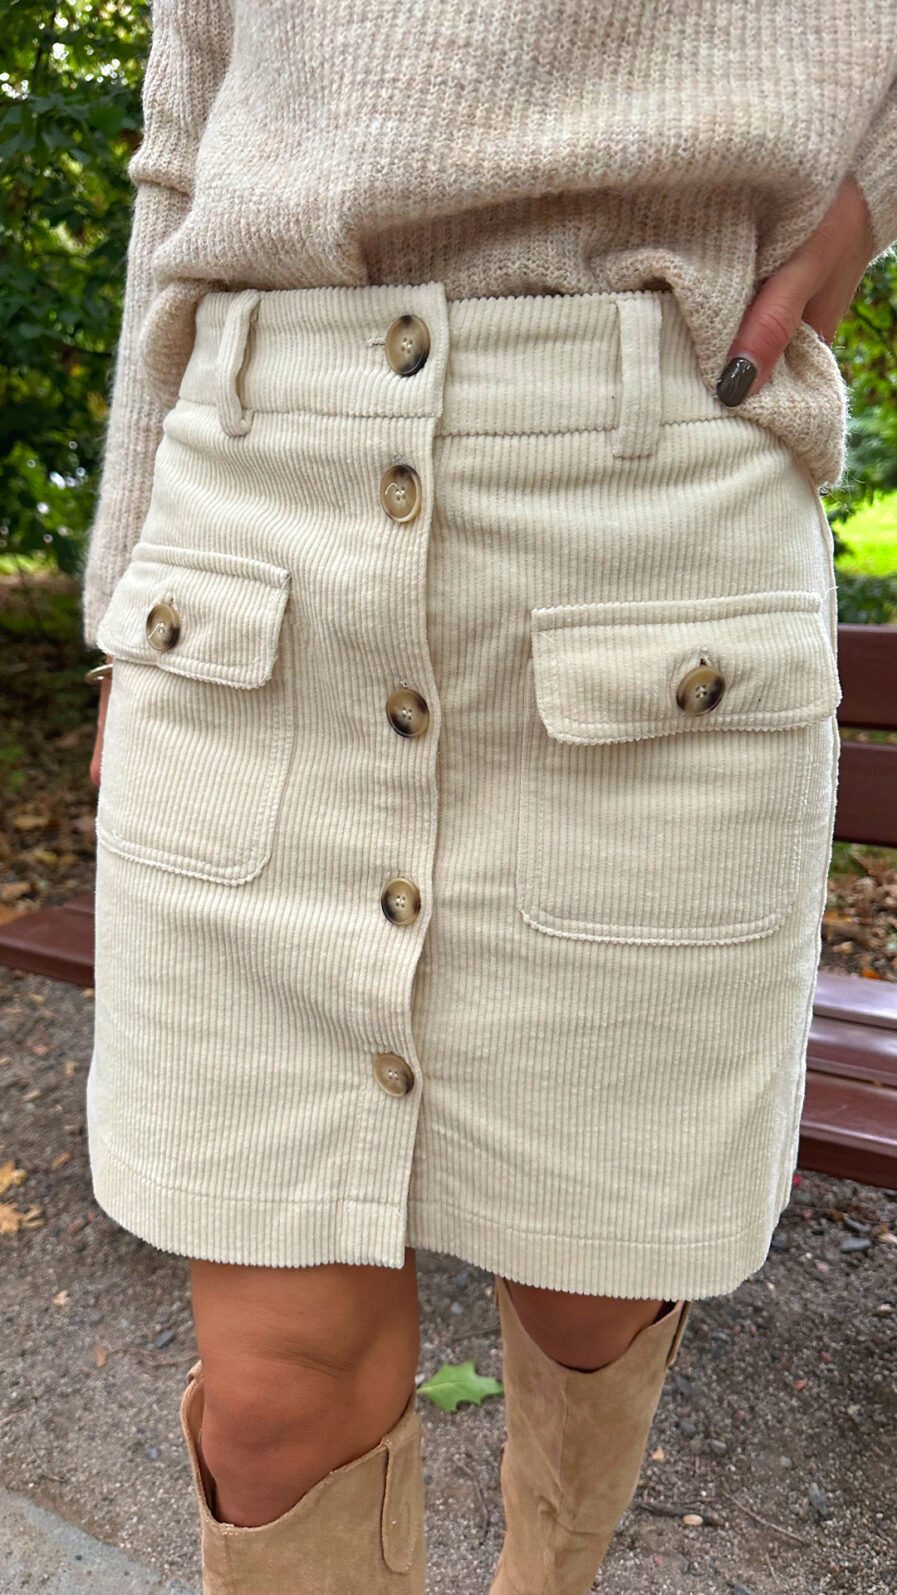 MARIE est une superbe jupe en velours, grosse tendance de la saison ! On craque pour le détail de ses boutons écaille de tortue. Cette pièce rejoint notre gamme en fibres naturelles avec son tissu en coton. Velours côtelé Taille mi-haute avec une patte de boutonnage. Deux poches Coupe droite